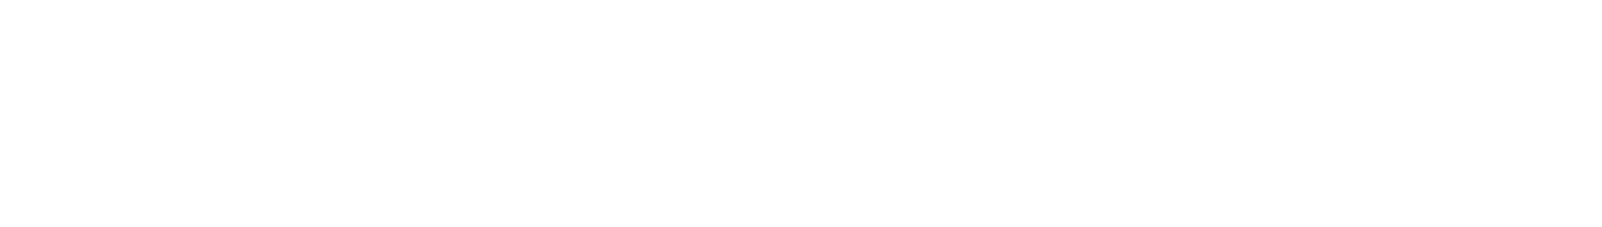 Peab logo large for dark backgrounds (transparent PNG)